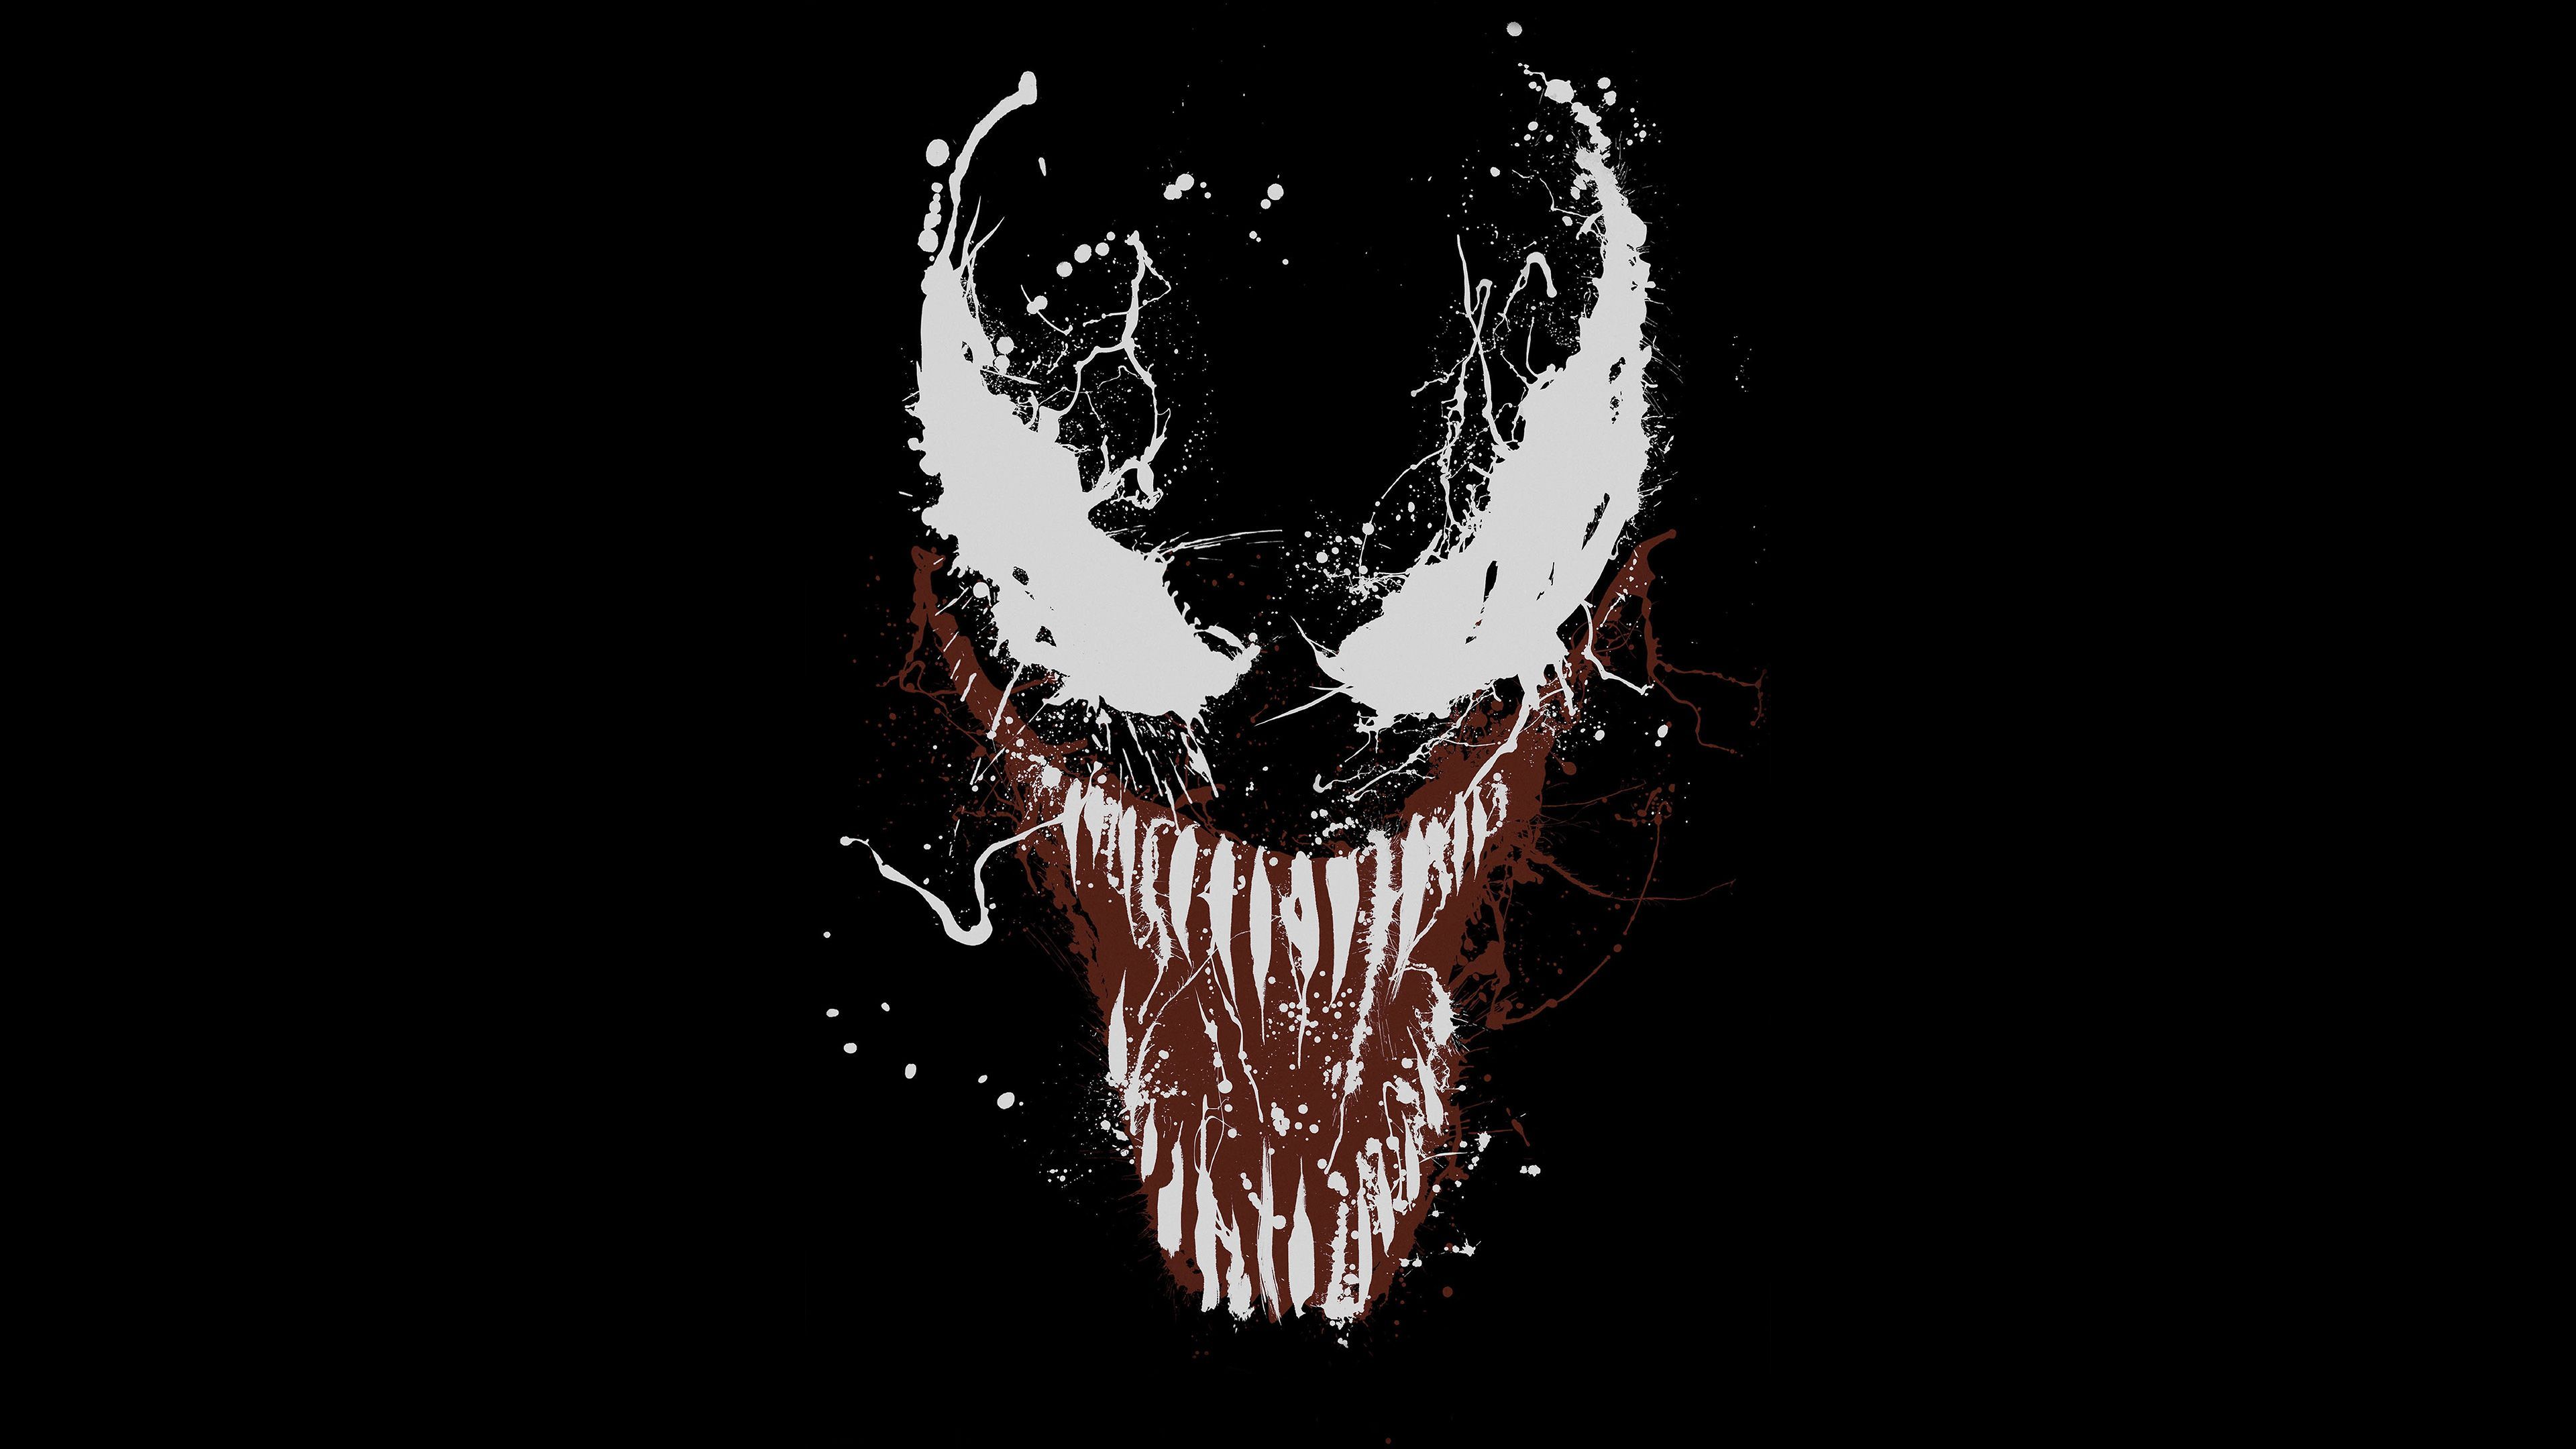 Fondos de pantalla de Venom - FondosMil